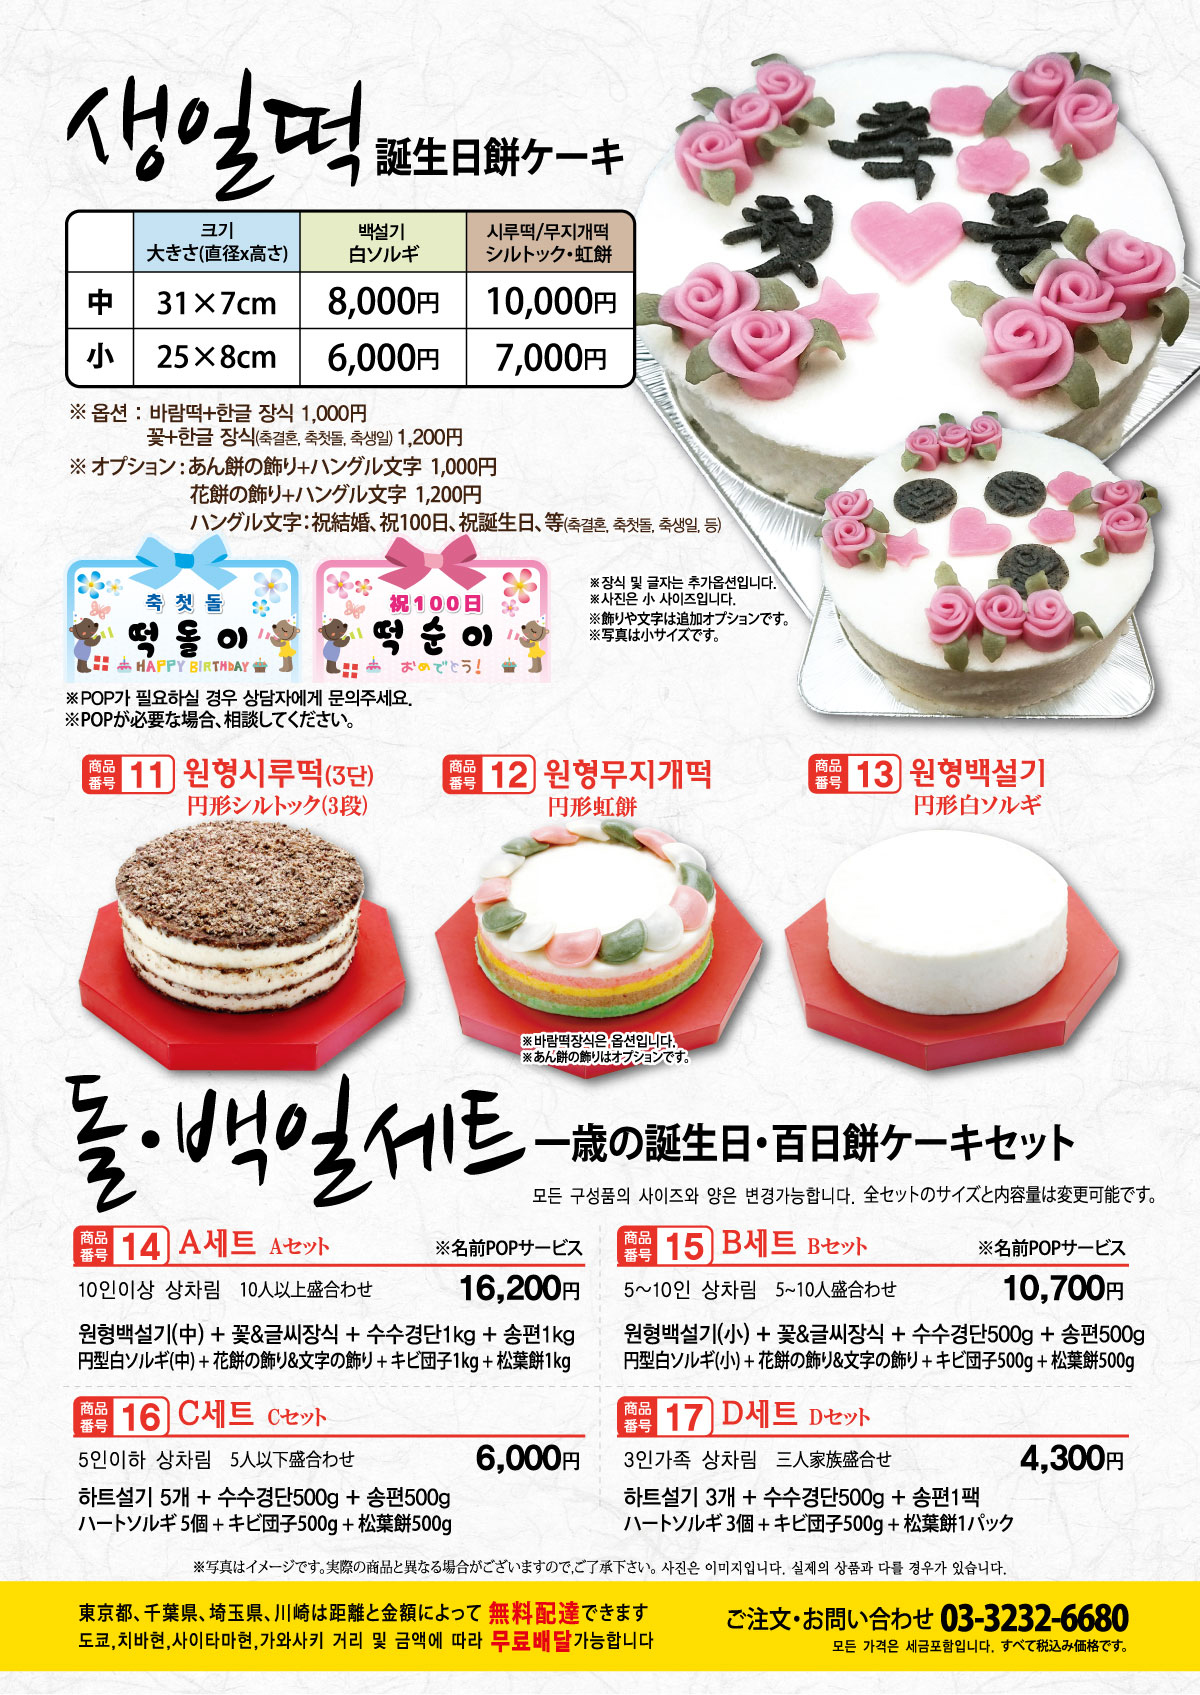 ジョンノ福餅屋、新大久保ジョンノ、お誕生日ケーキ、韓国伝統お菓子